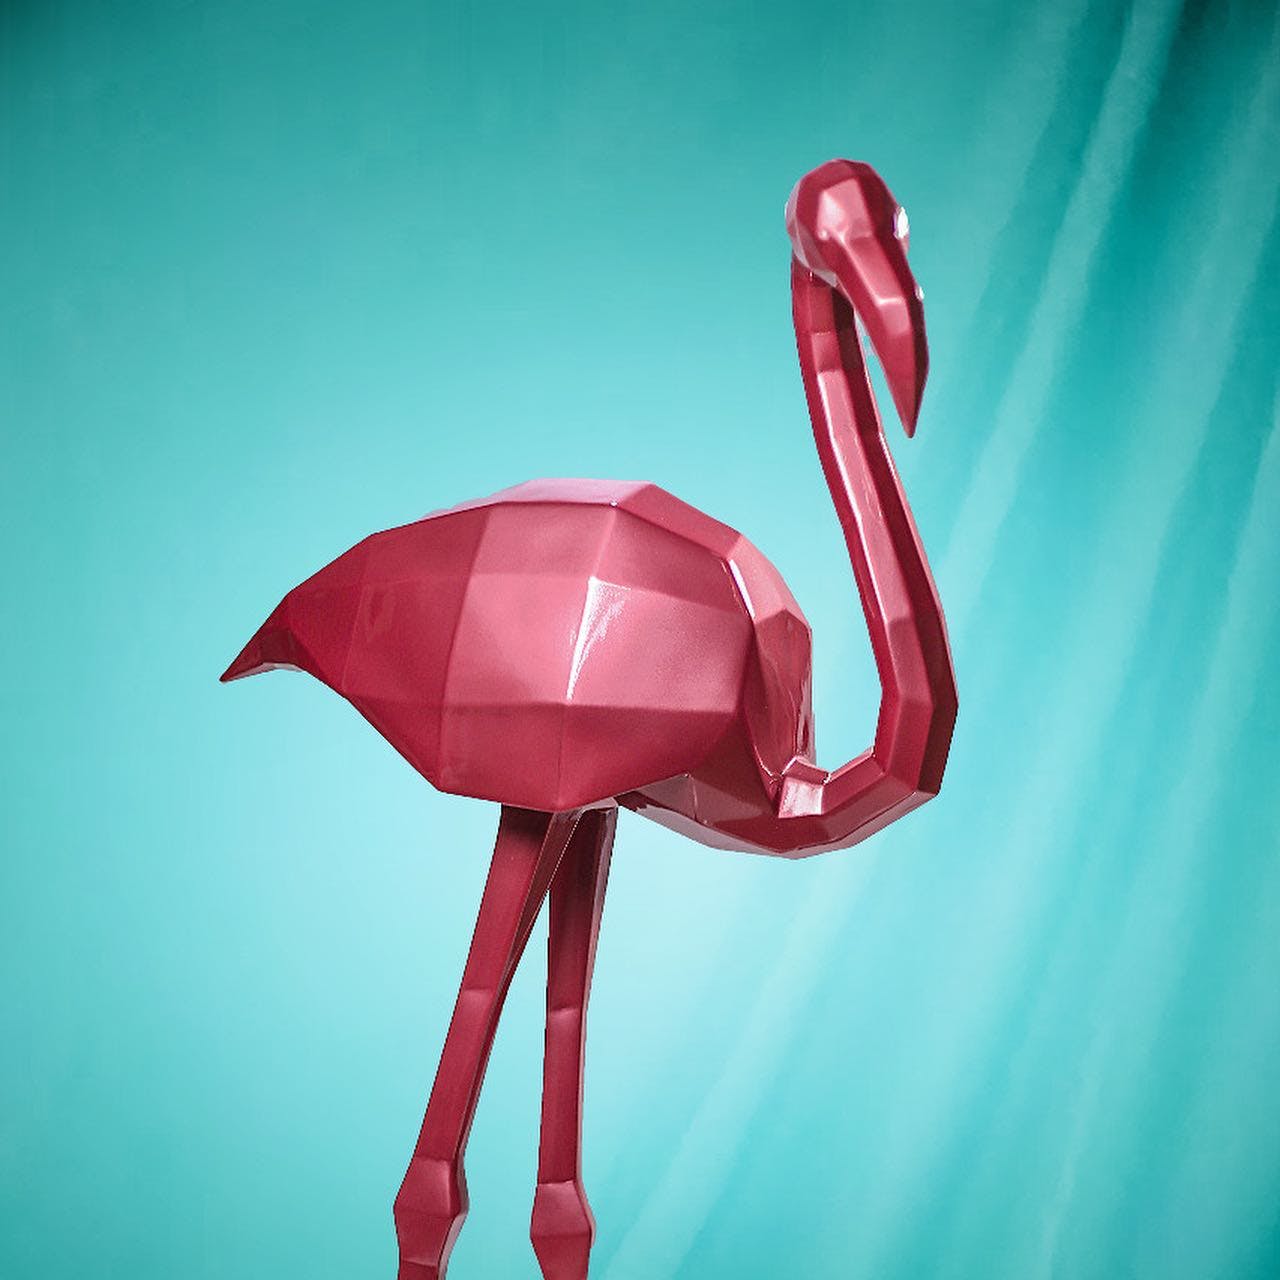 Arm,Bird,Greater flamingo,Flamingo,Beak,Creative arts,Art,Wing,Magenta,Electric blue